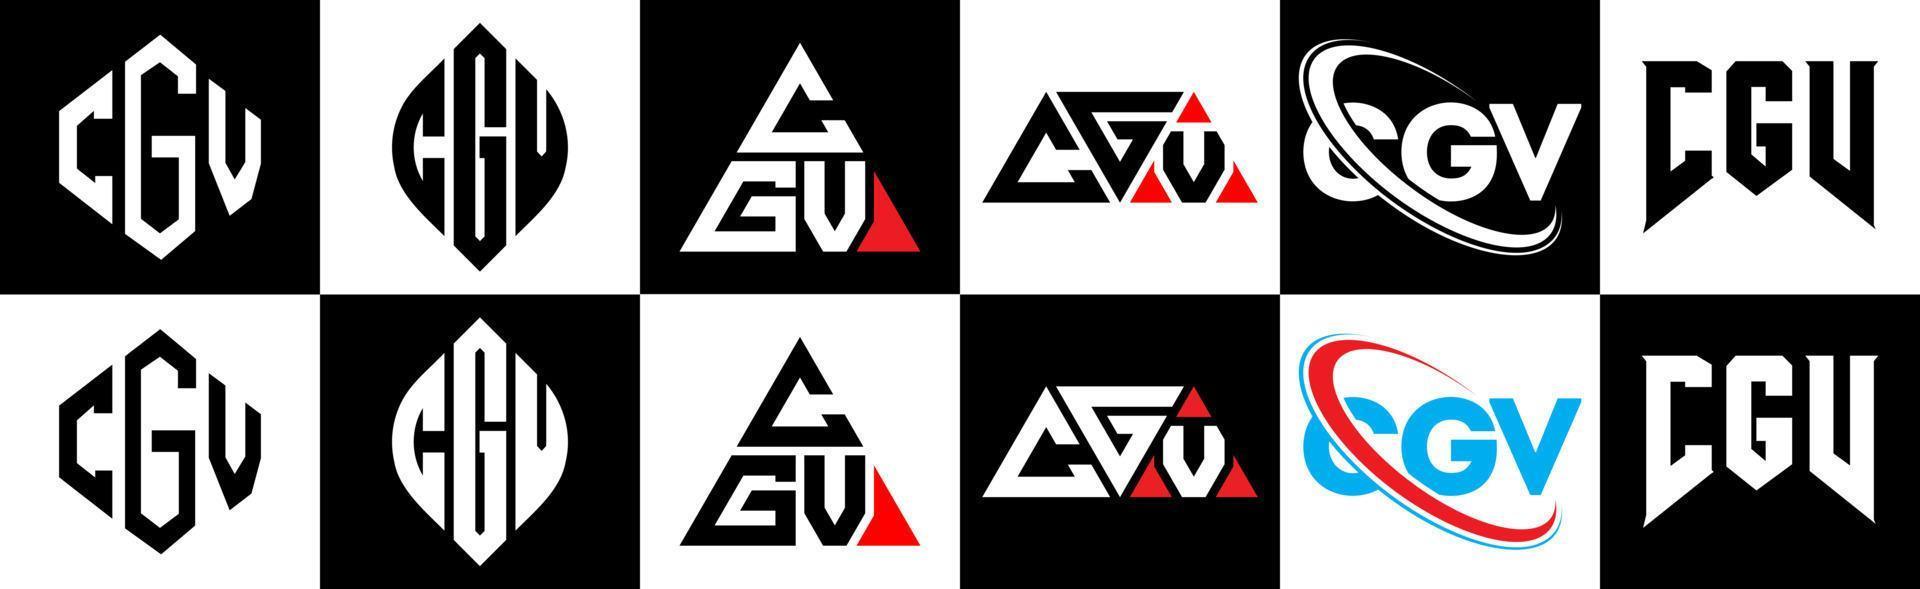 Cgv-Buchstaben-Logo-Design in sechs Stilen. cgv-polygon, kreis, dreieck, sechseck, flacher und einfacher stil mit schwarz-weißem buchstabenlogo in einer zeichenfläche. Cgv minimalistisches und klassisches Logo vektor